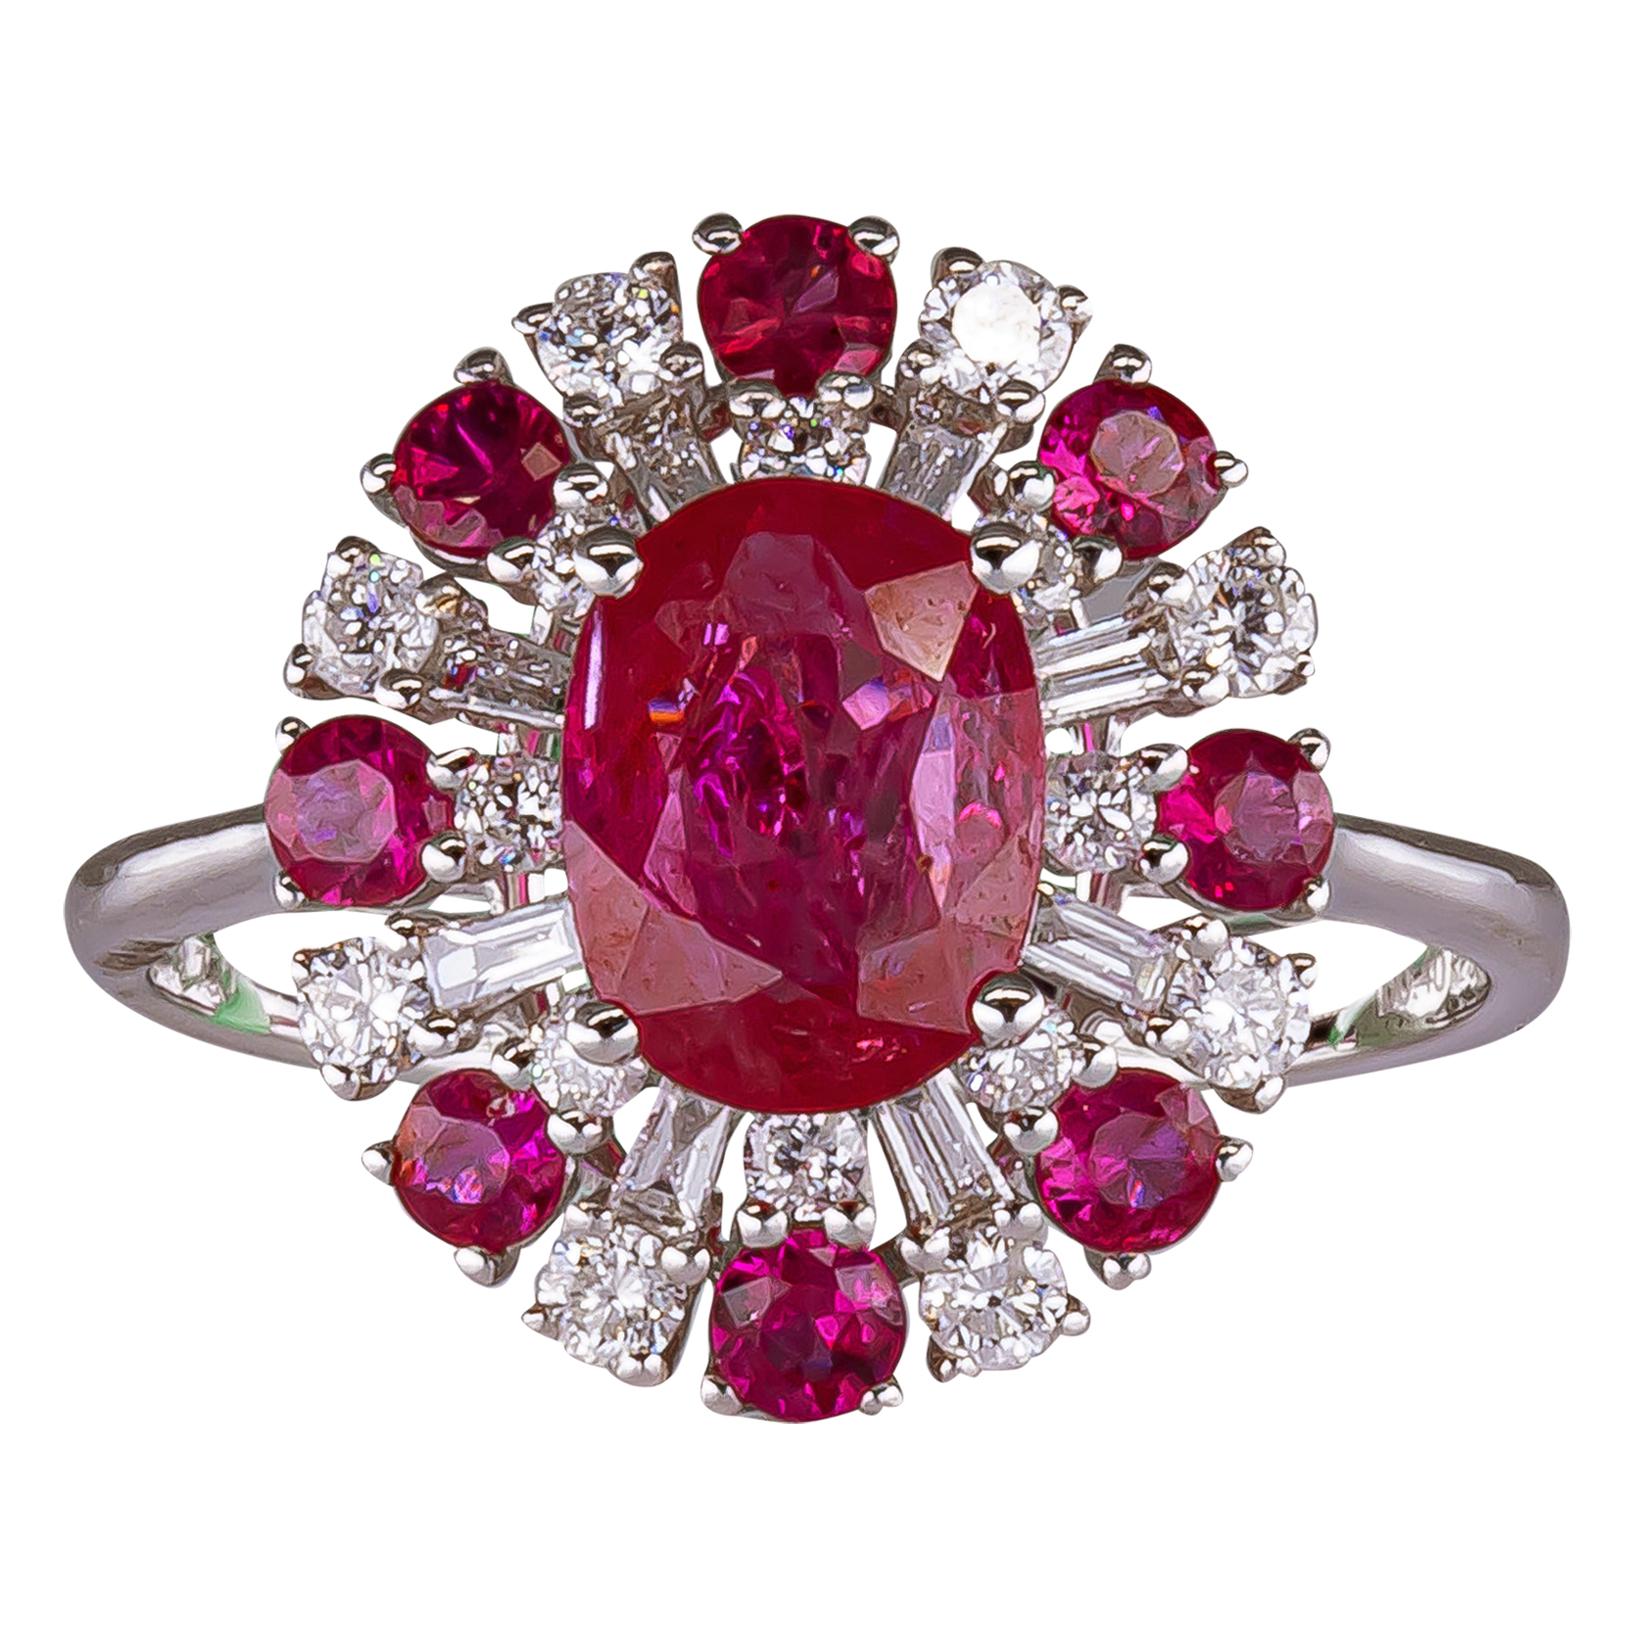 1.60 Carat Ruby Ring with Diamonds 18 Karat Gold